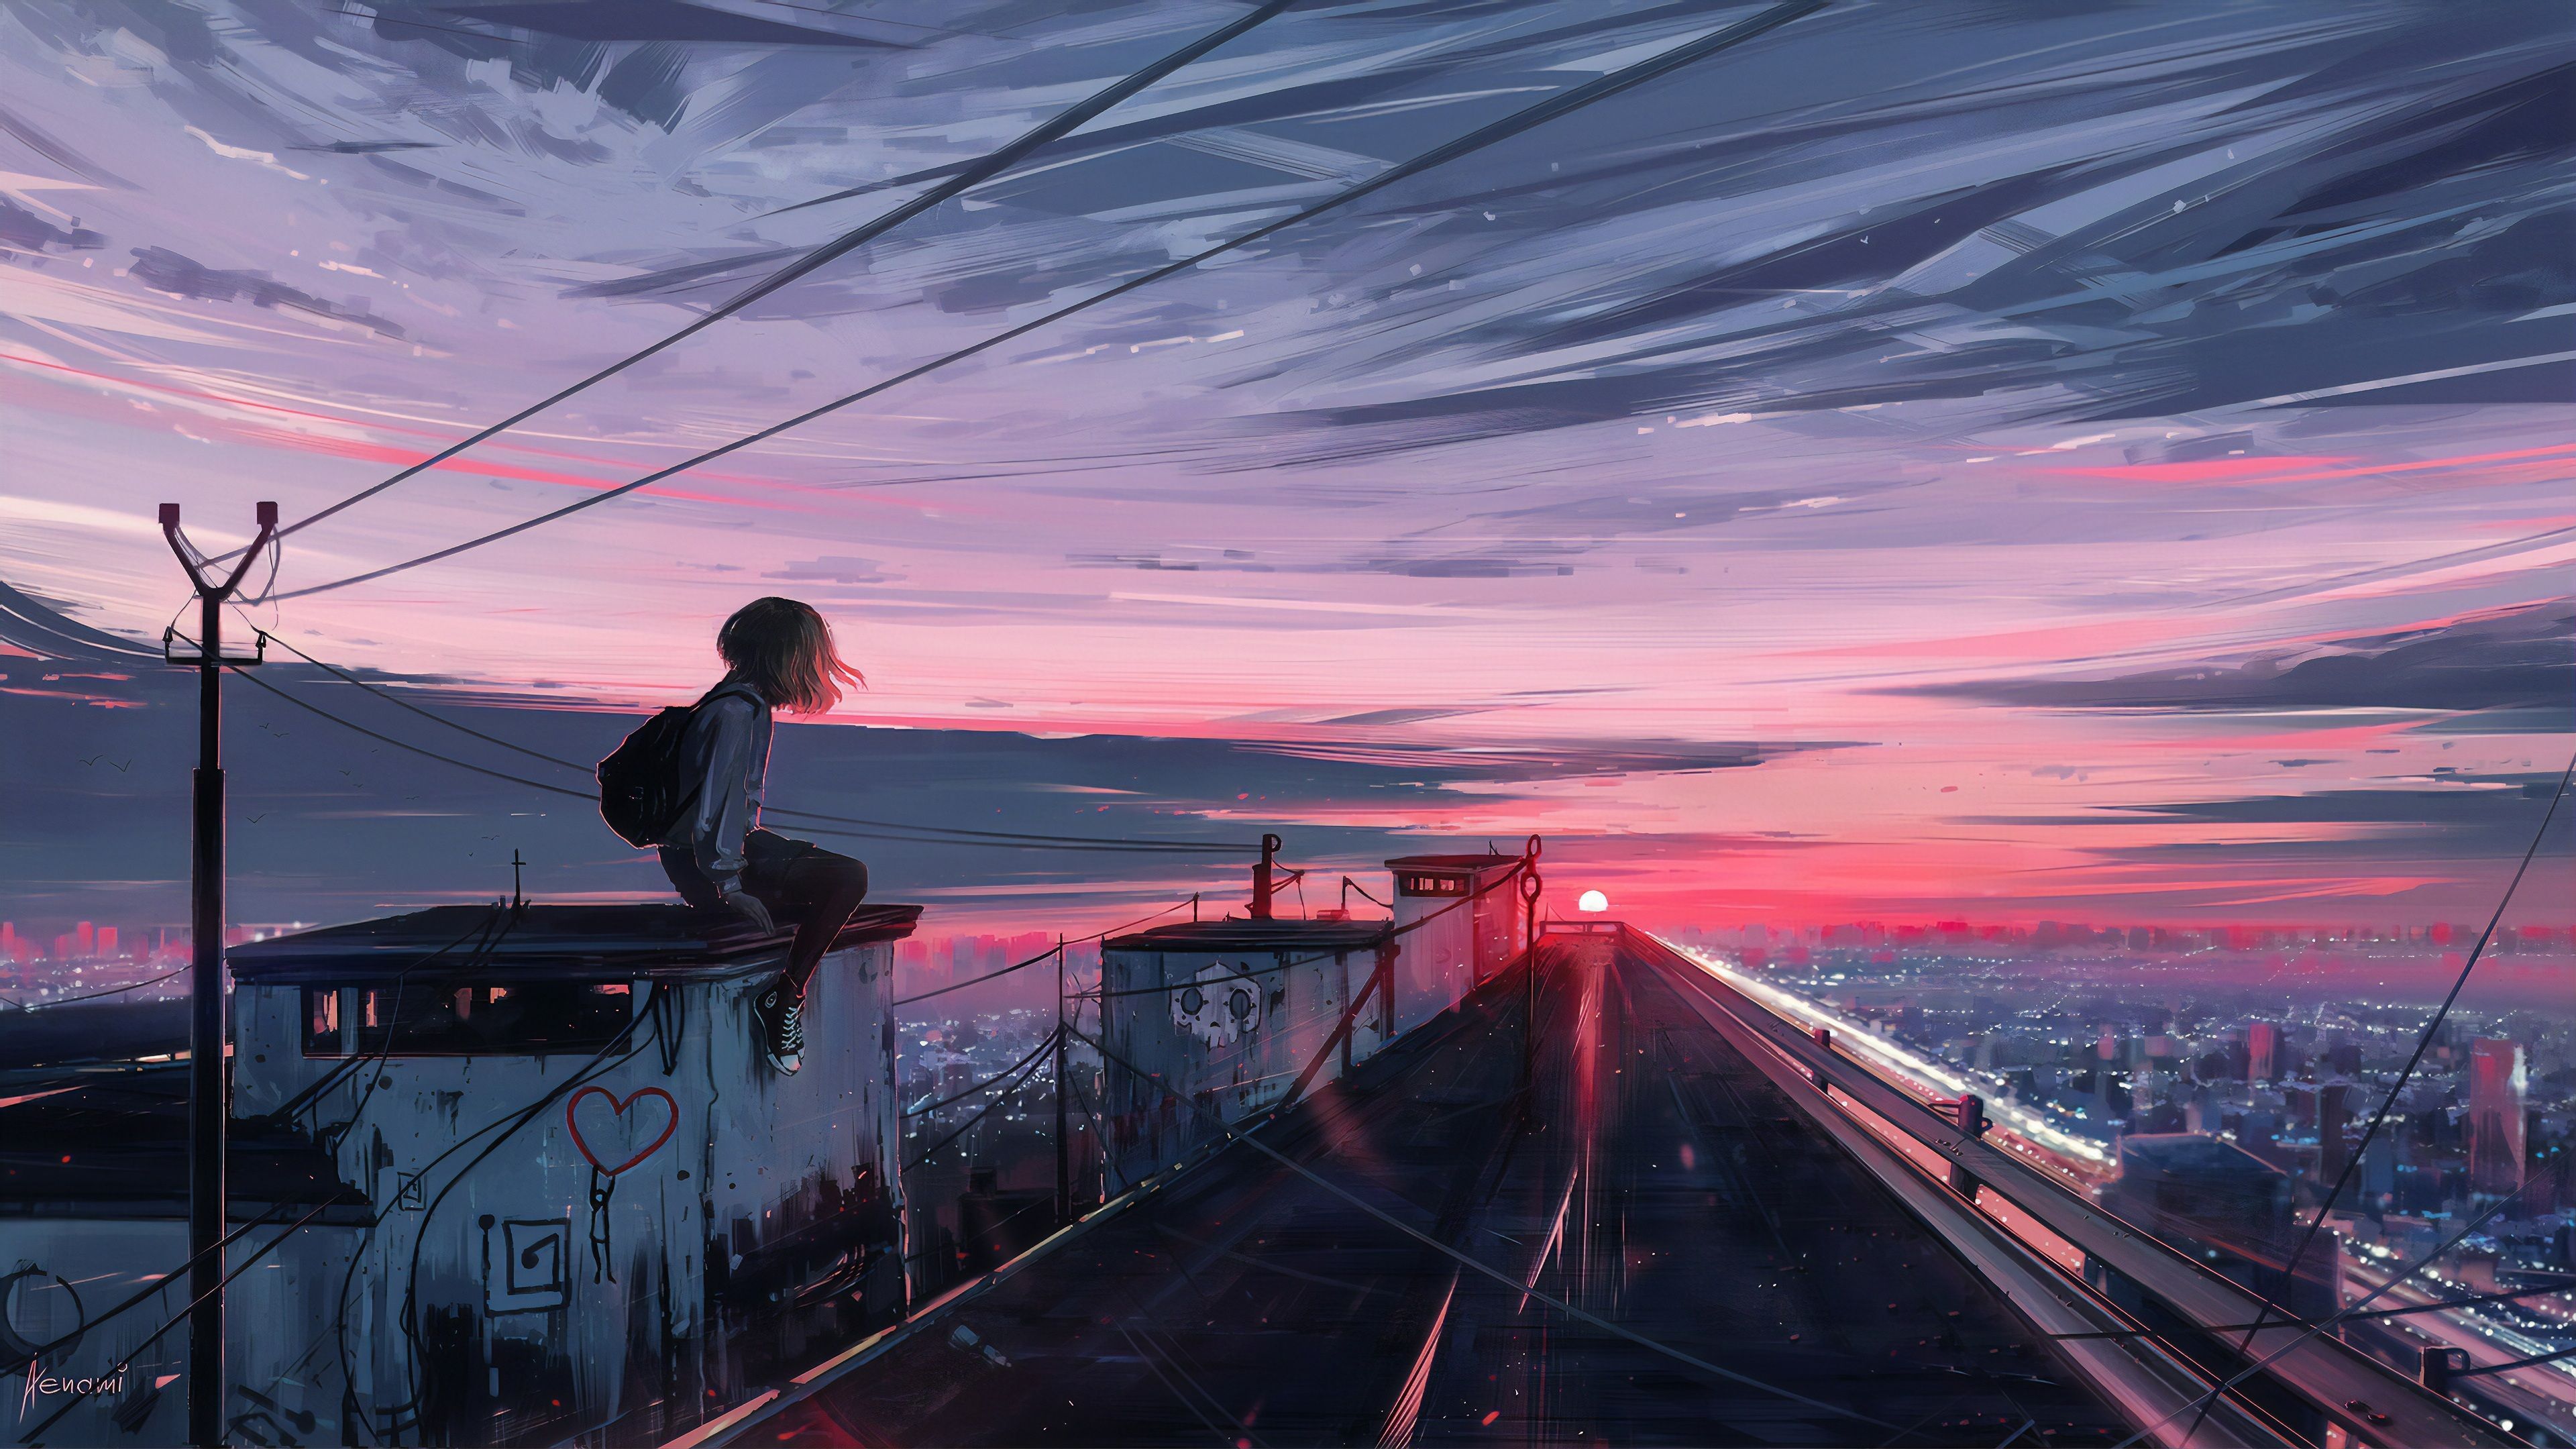 Anime Aesthetic Sunset Wallpaper Free Anime Aesthetic Sunset Background